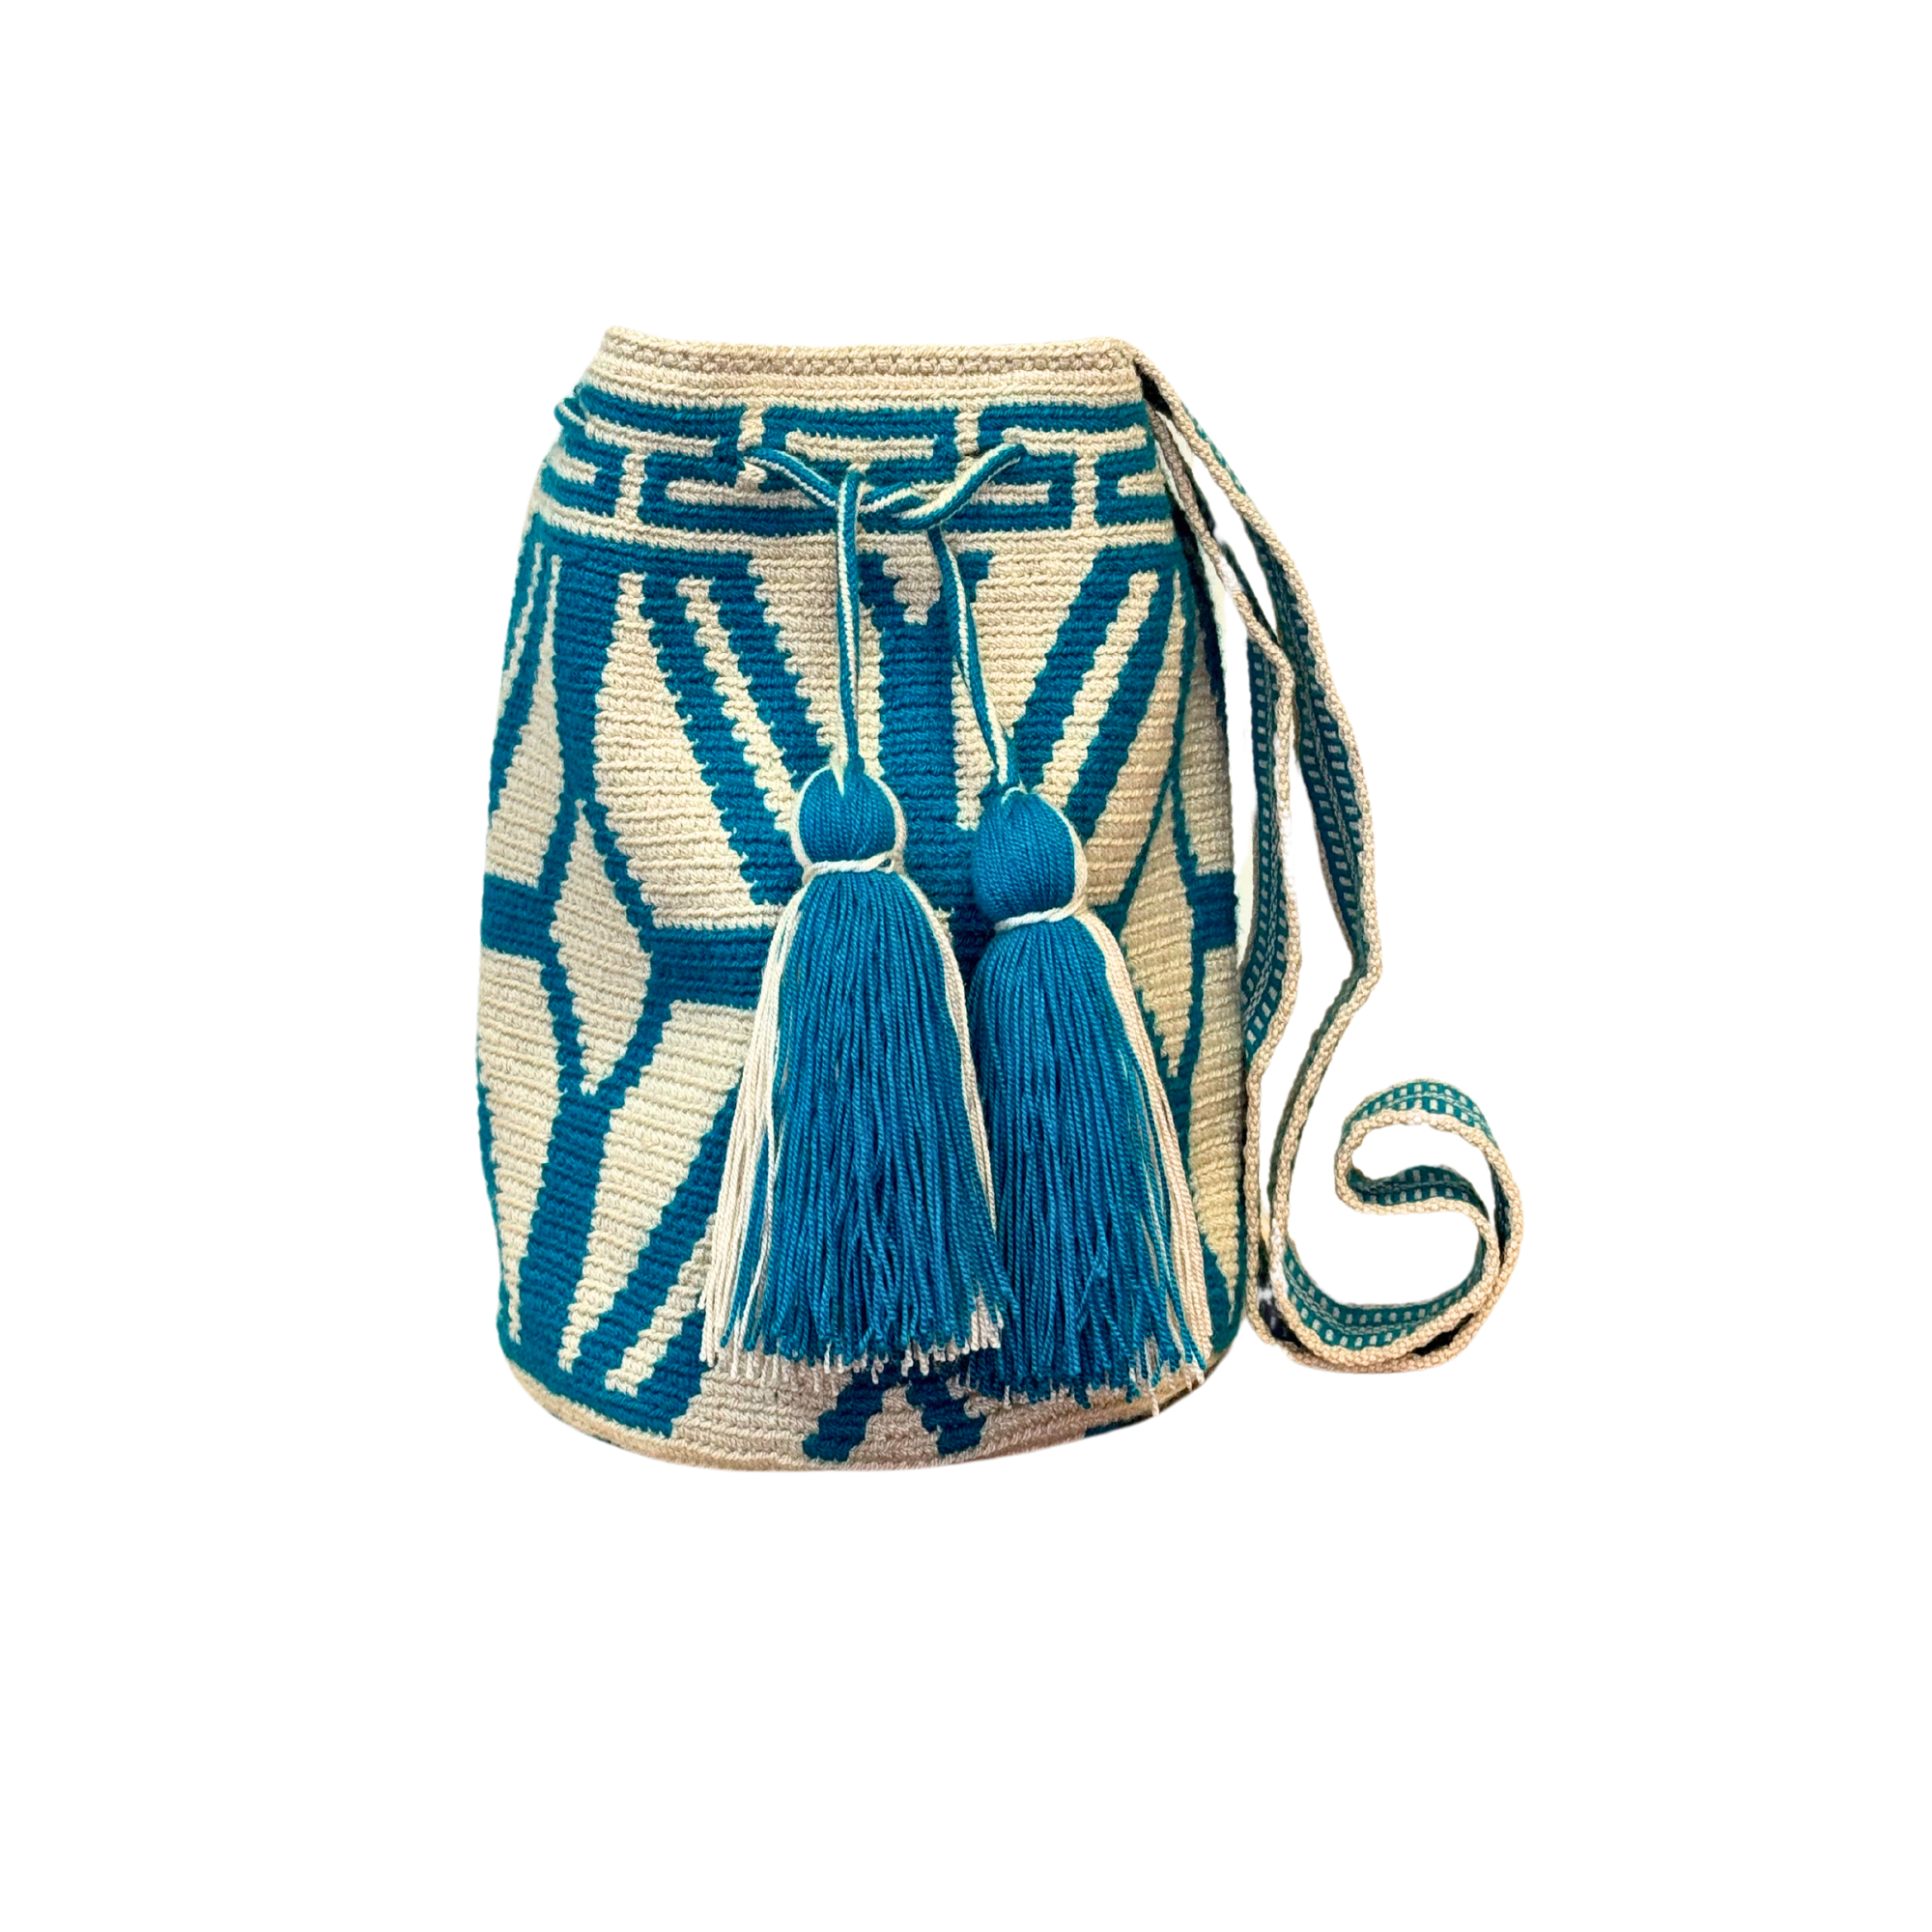 Wayuu mochila bag | Medium Traditional | Solid Strap | Beige and teal